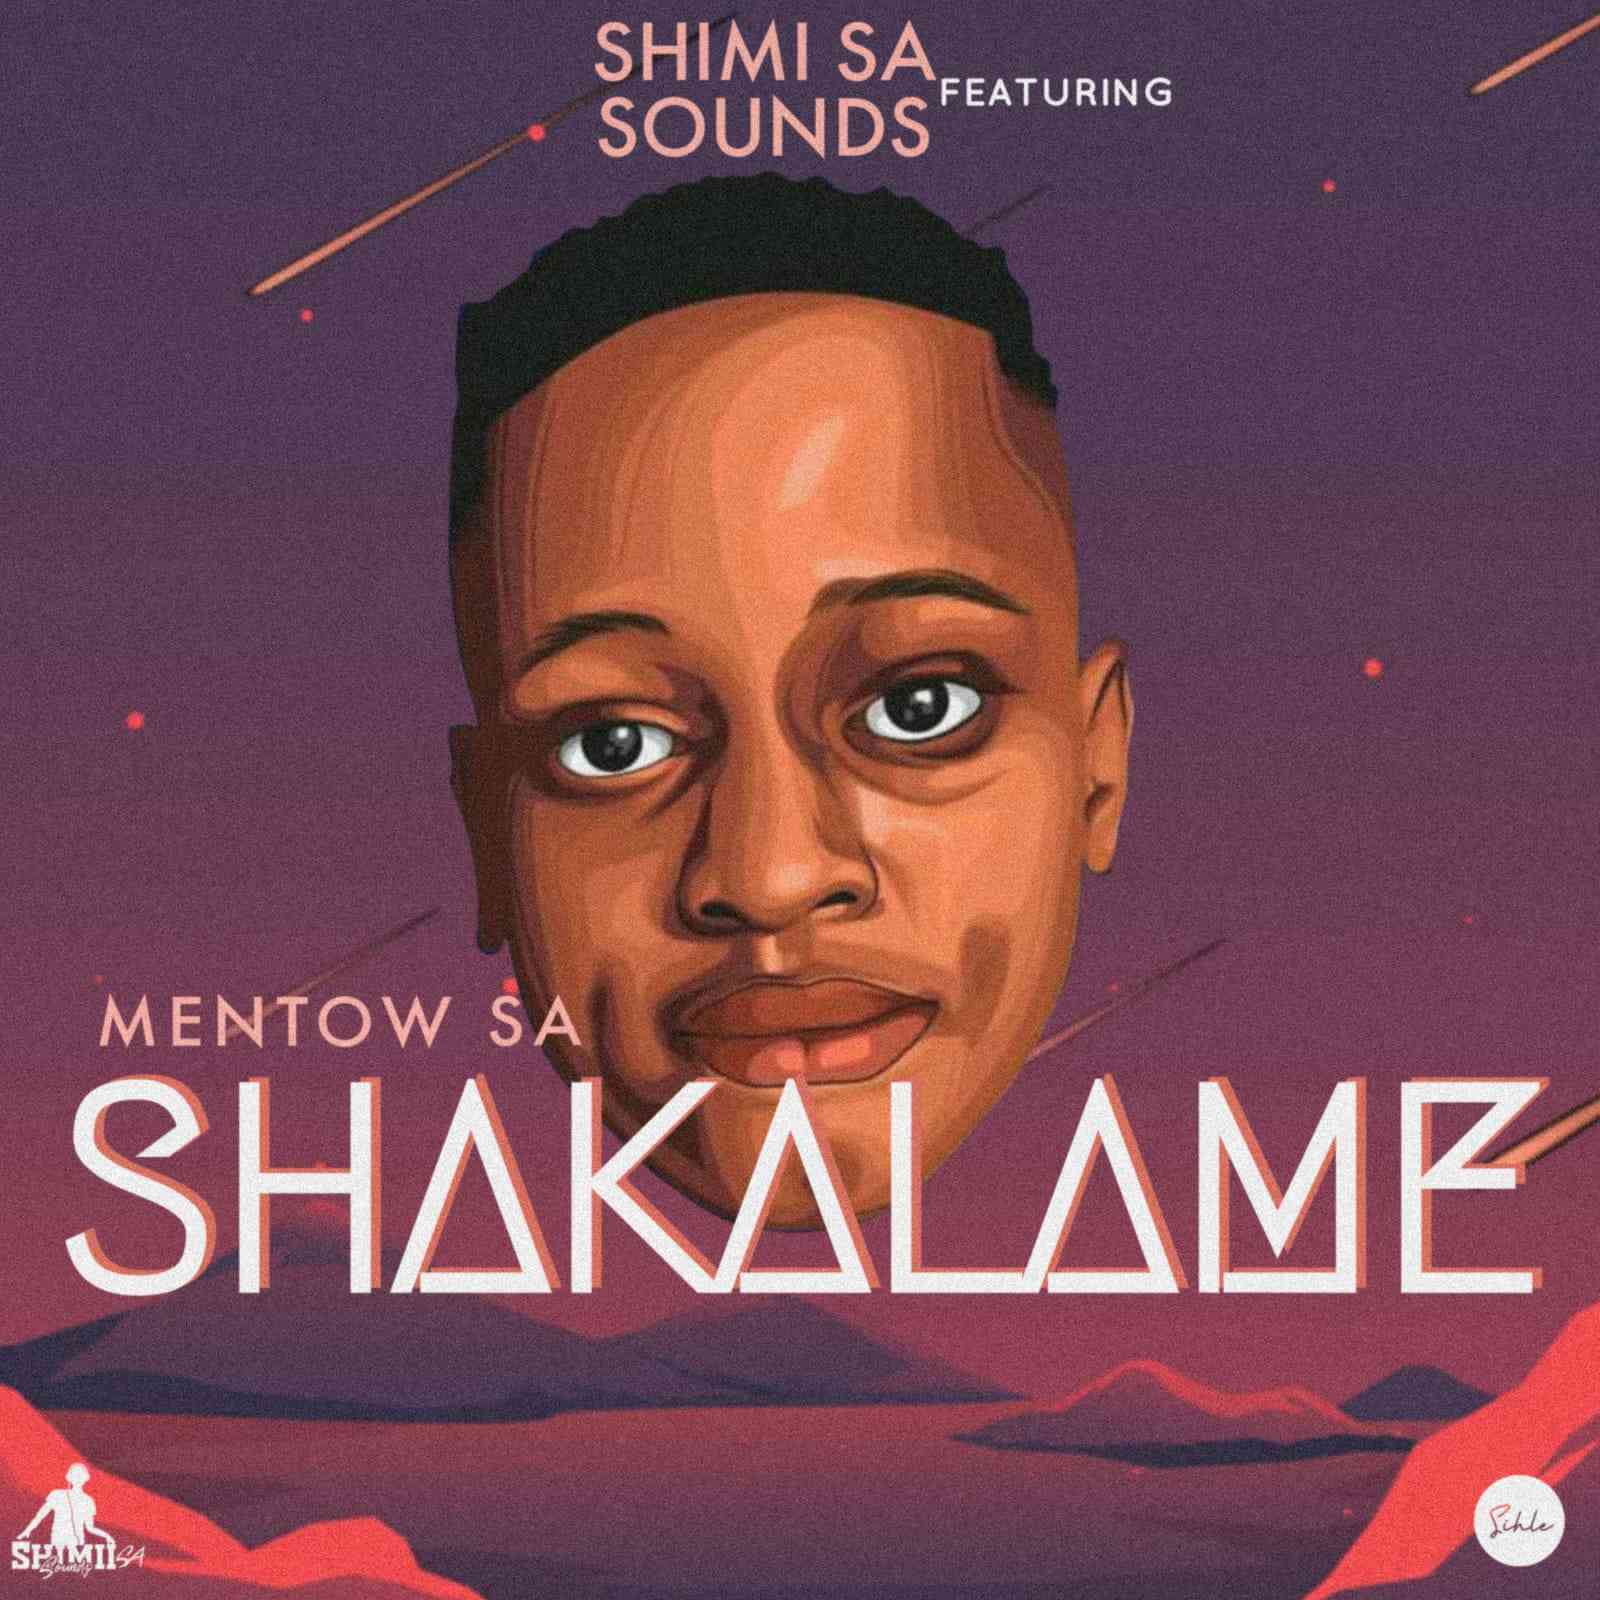 Shimii SA – Shakalame ft Mentow SA